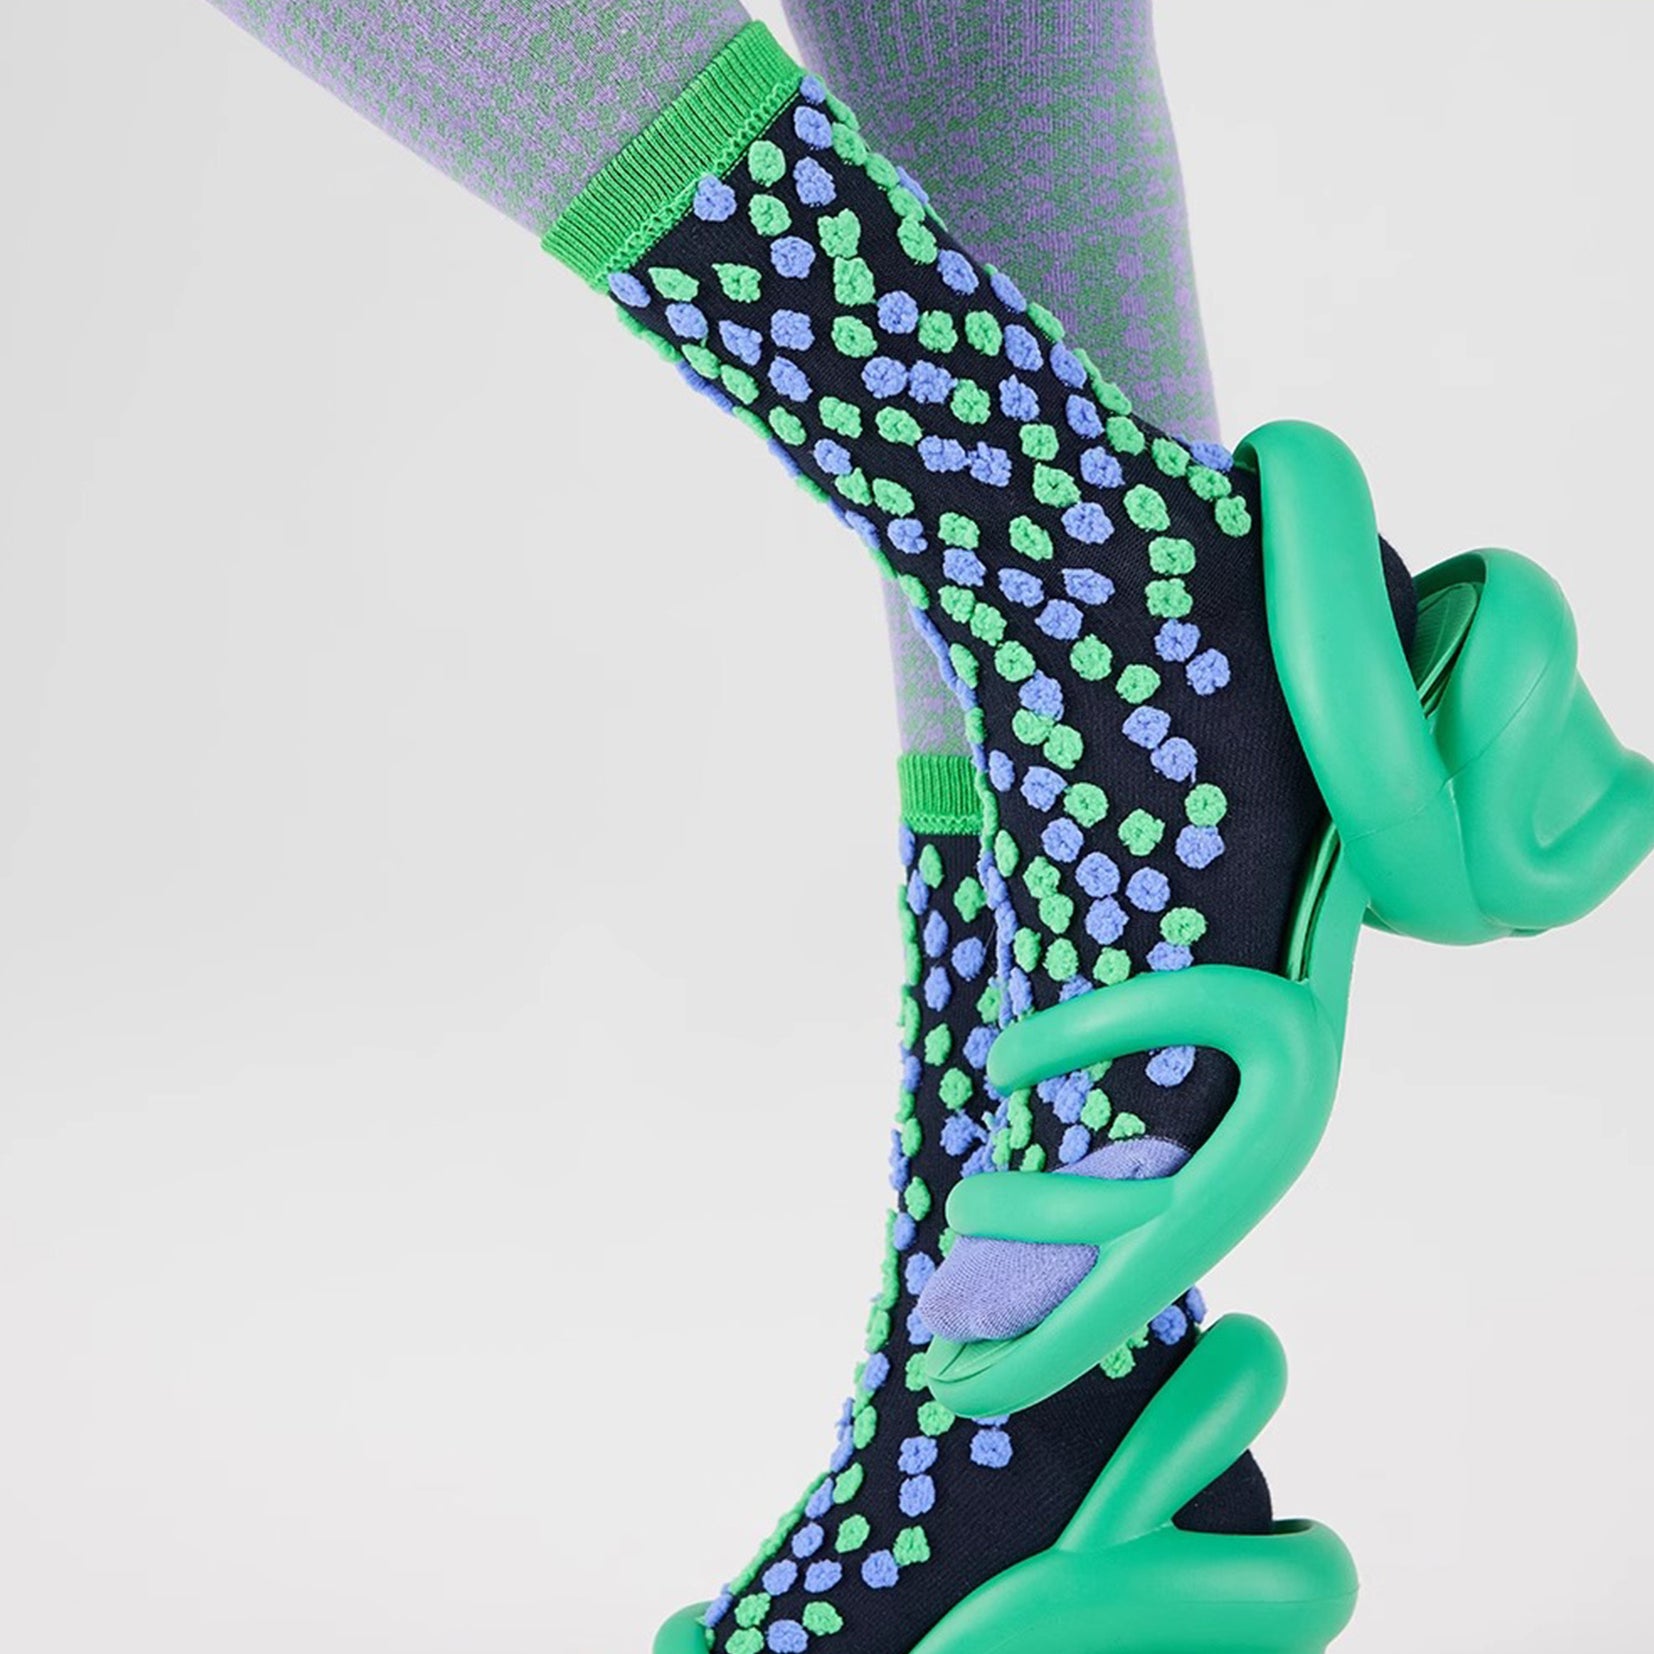 Beans bumpy reversible mid-calf sock - green